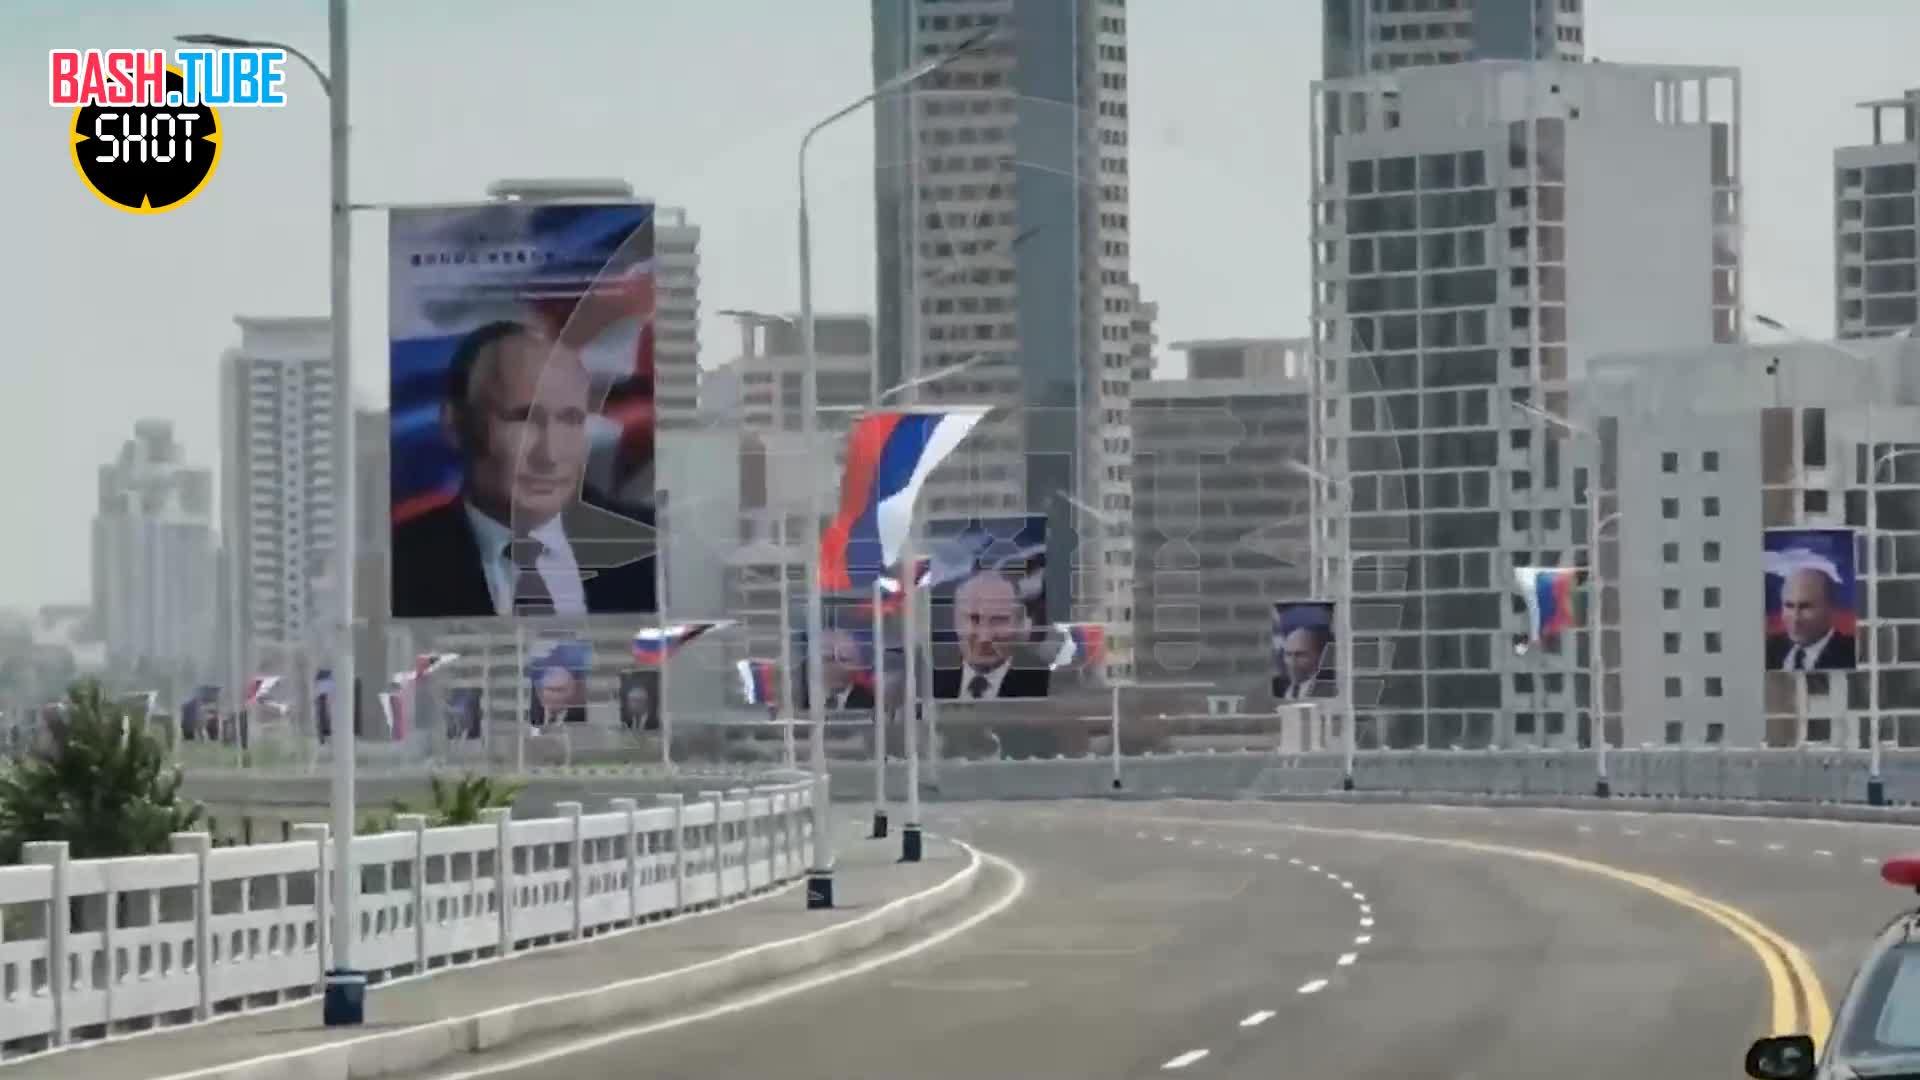  Портреты Путина, флаги России и КНДР на улицах: Пхеньян готовится к визиту президента РФ